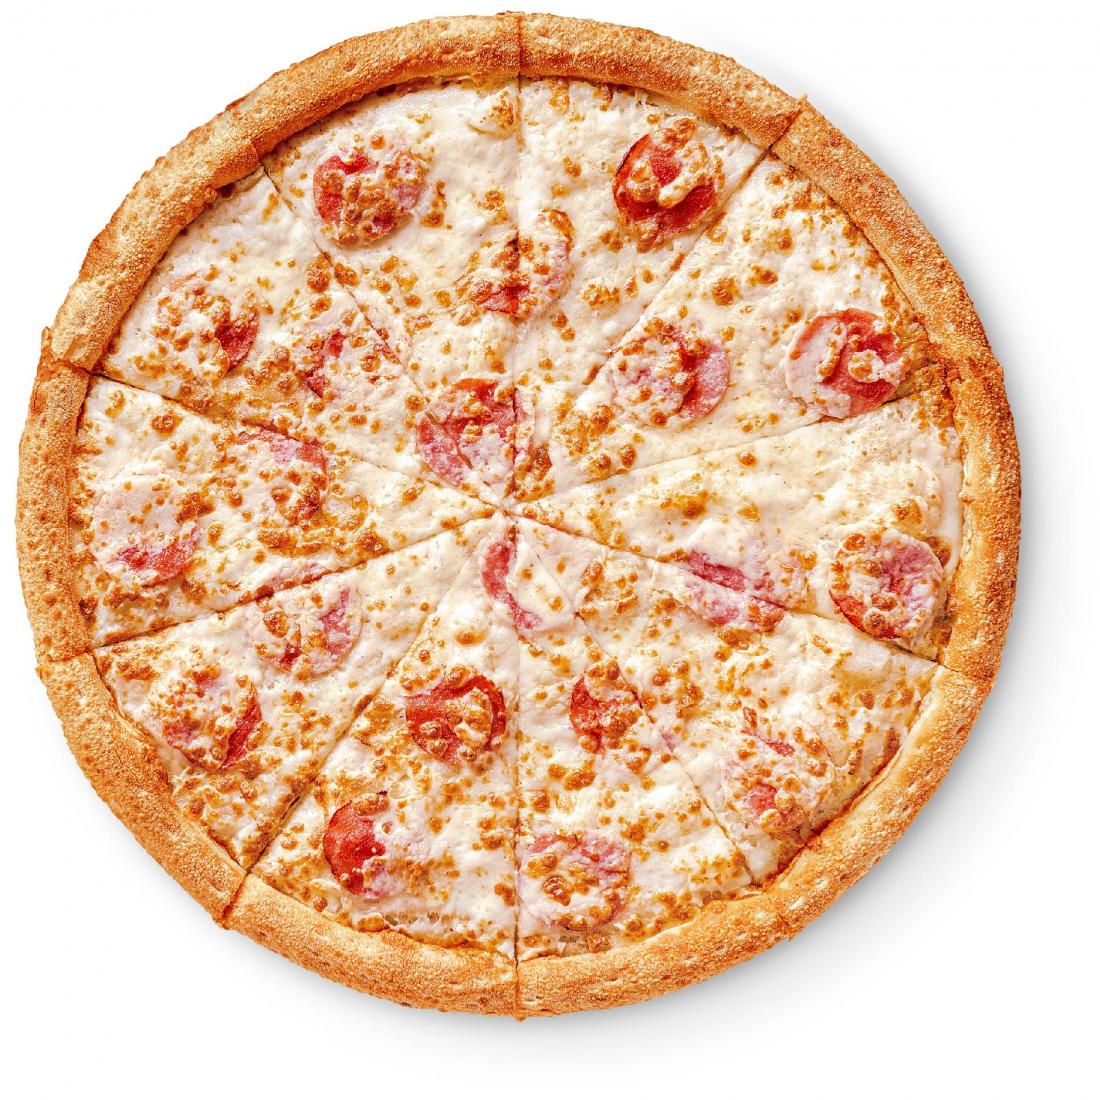 состав пепперони додо пицца фото 54